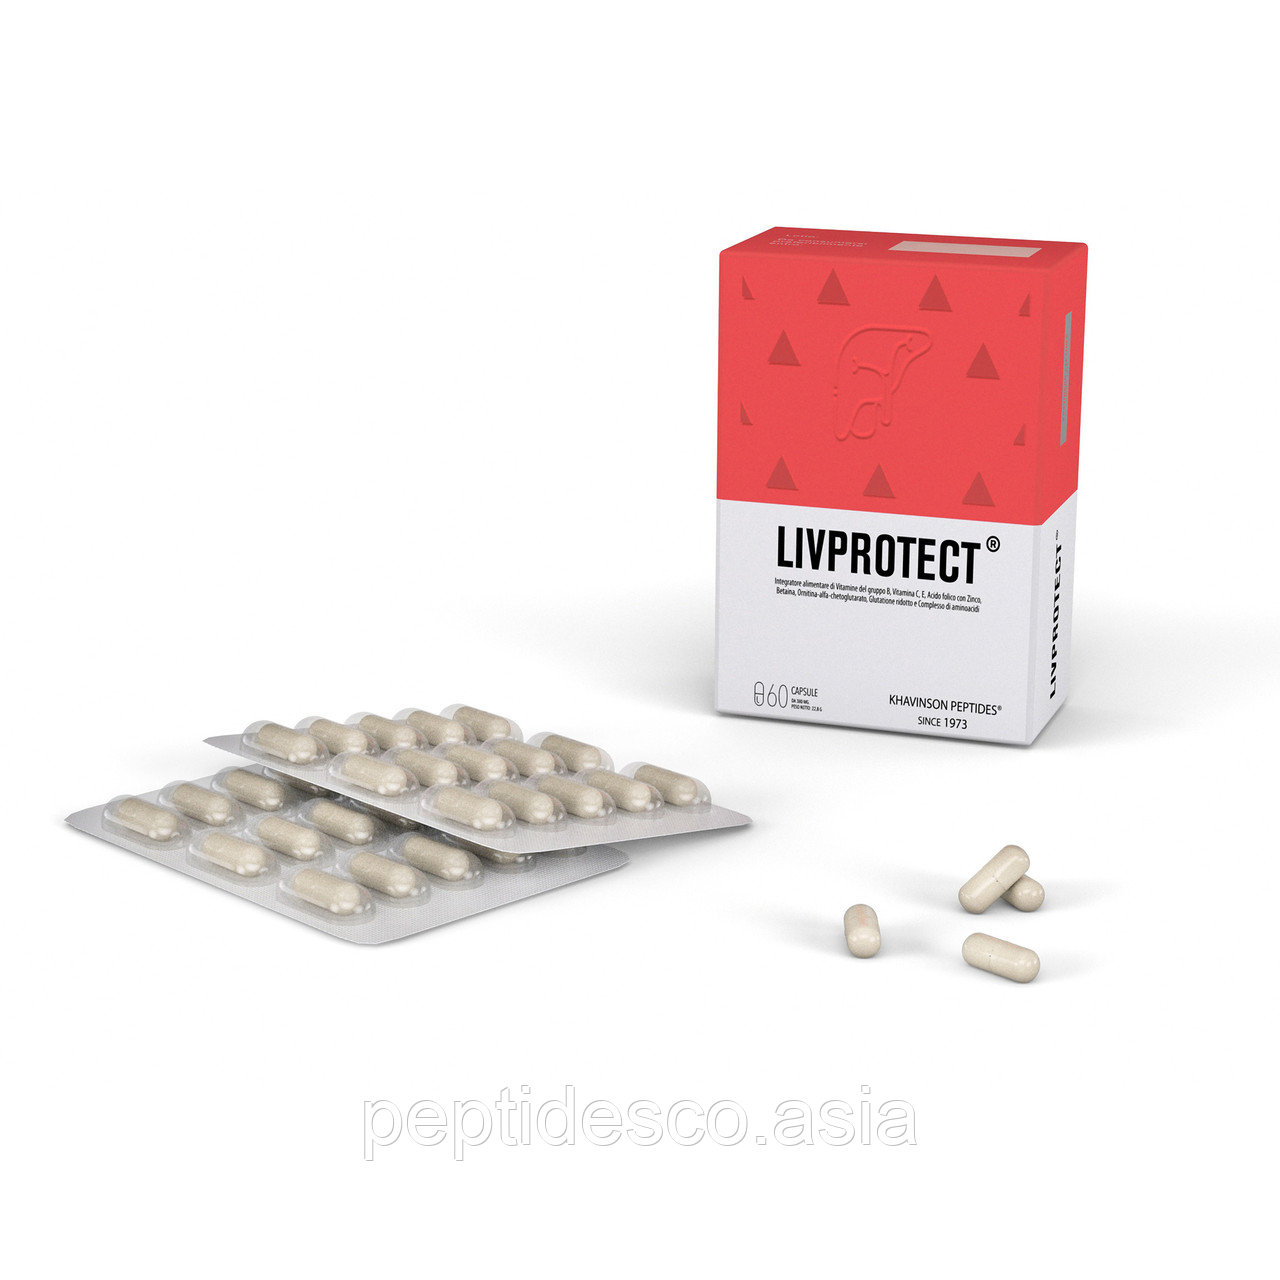 Ливпротект LIVPROTECT®  15 капсул - пептидный комплекс печени и ЖКТ, Khavinson Peptides®., фото 1